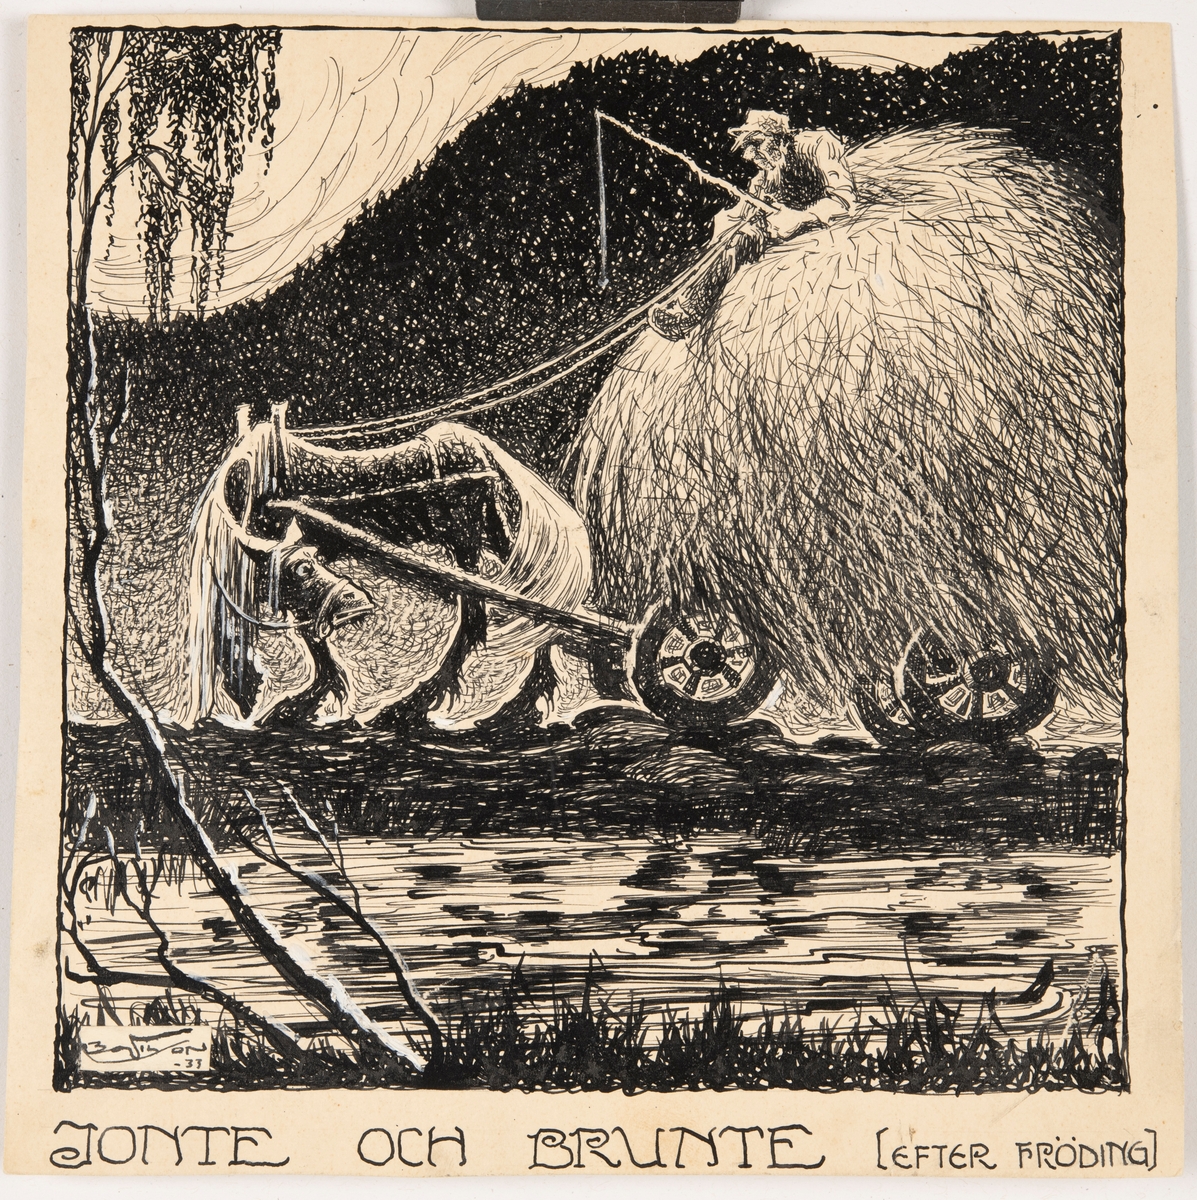 Illustration av dikten "Jonte och Brunte" av Gustaf Fröding, publicerad i "Gitarr och dragharmonika" år 1891.

En häst drar ett stort hölass på en ojämn skogsväg. En man sitter uppe på hölasset. Han håller en piska och ser sliten ut. Hästen kollar förvirrat bak mot mannen och hölasset. I förgrunden ligger en sjö och i bakgrunden finns en skog.